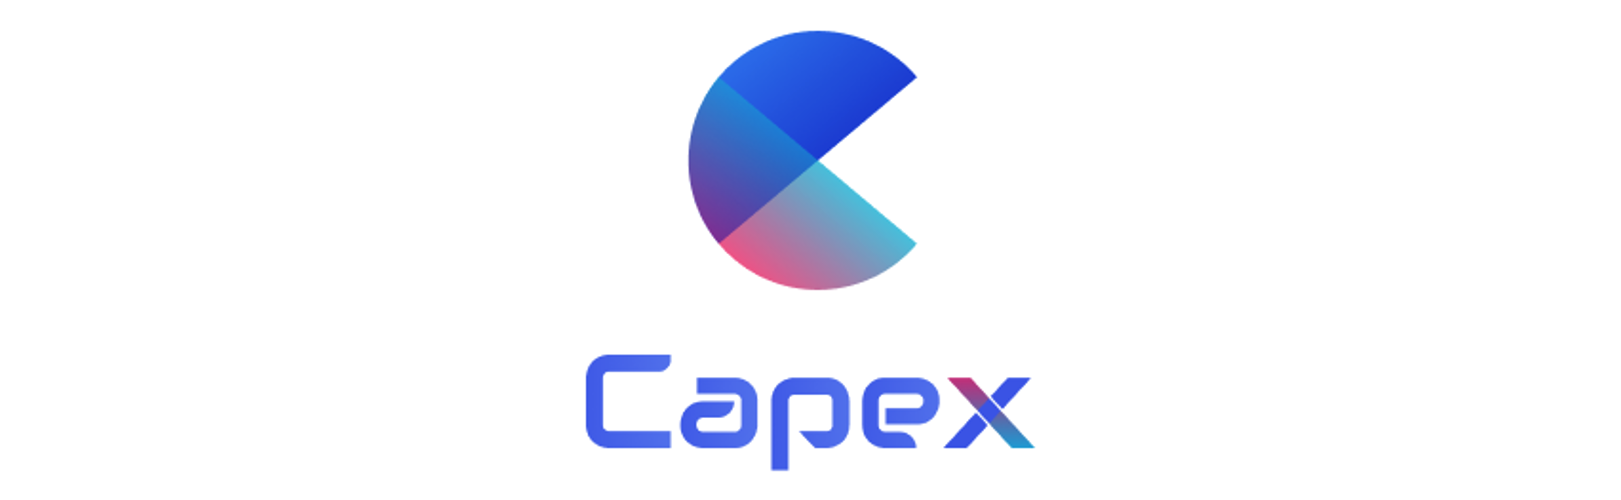 株式会社 Capexの採用 求人 転職サイトgreen グリーン